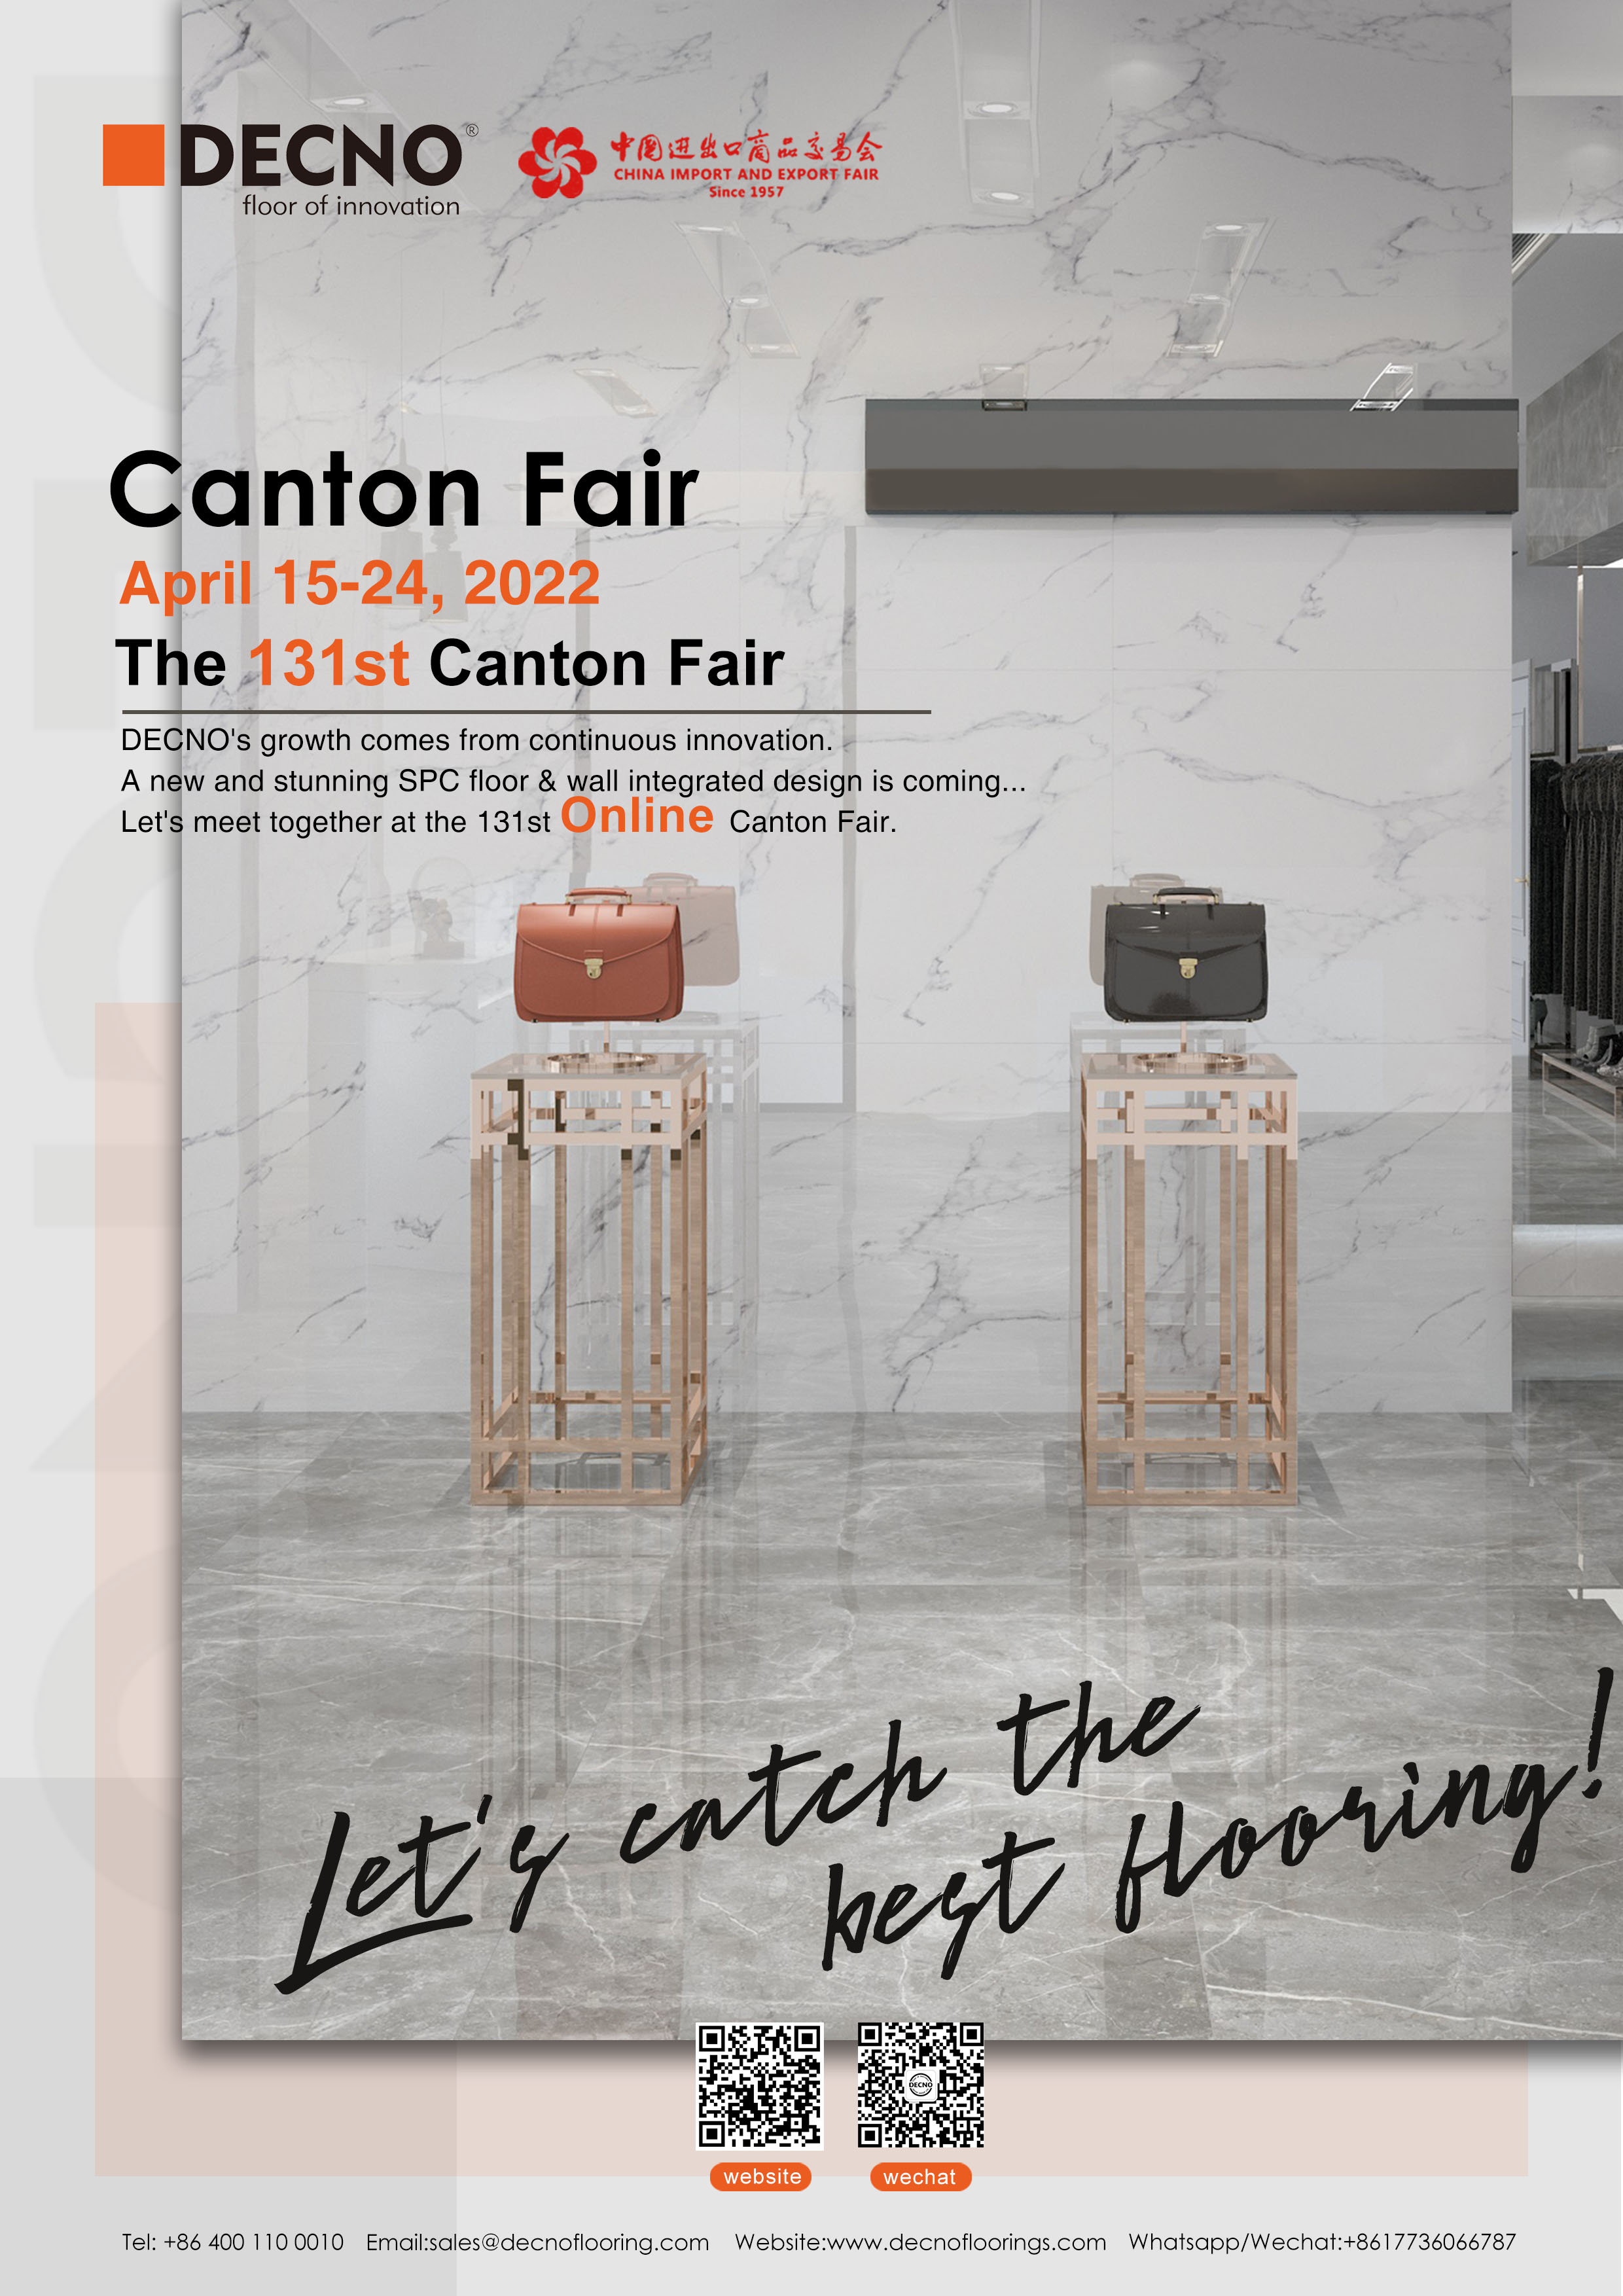 DECNO--131st Canton Fair | Online sharing Show